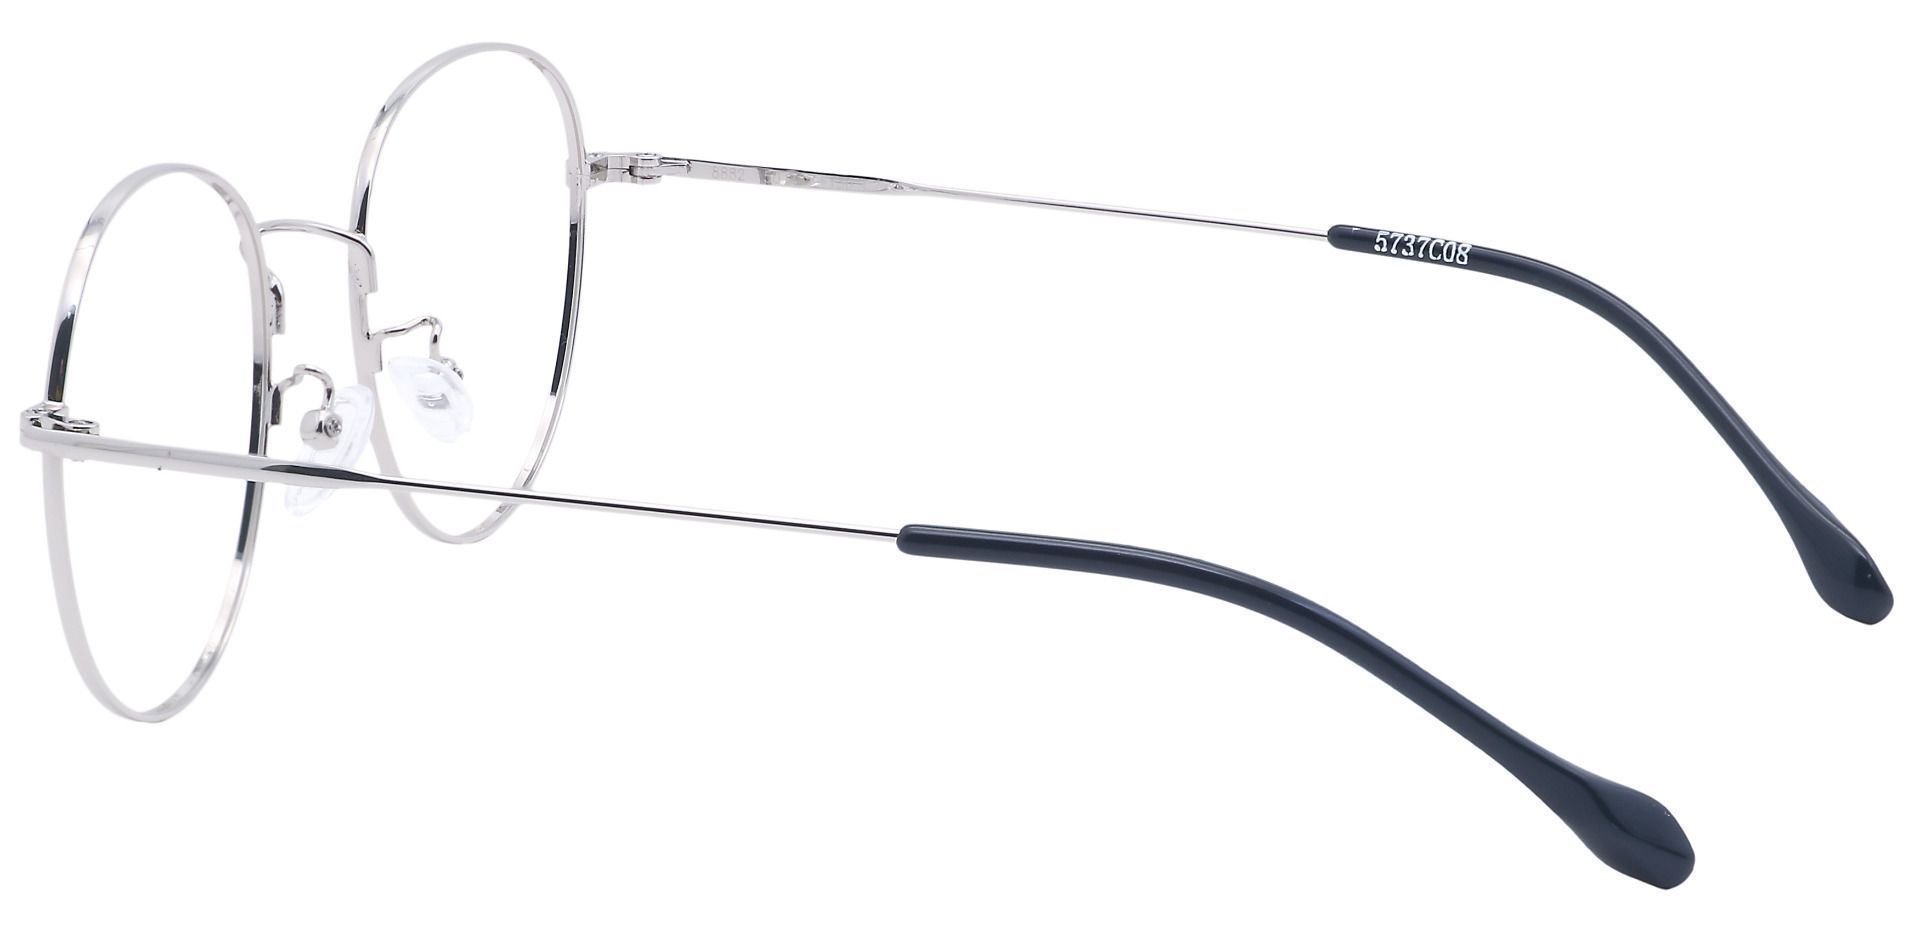 Miller Oval Progressive Glasses - Gray